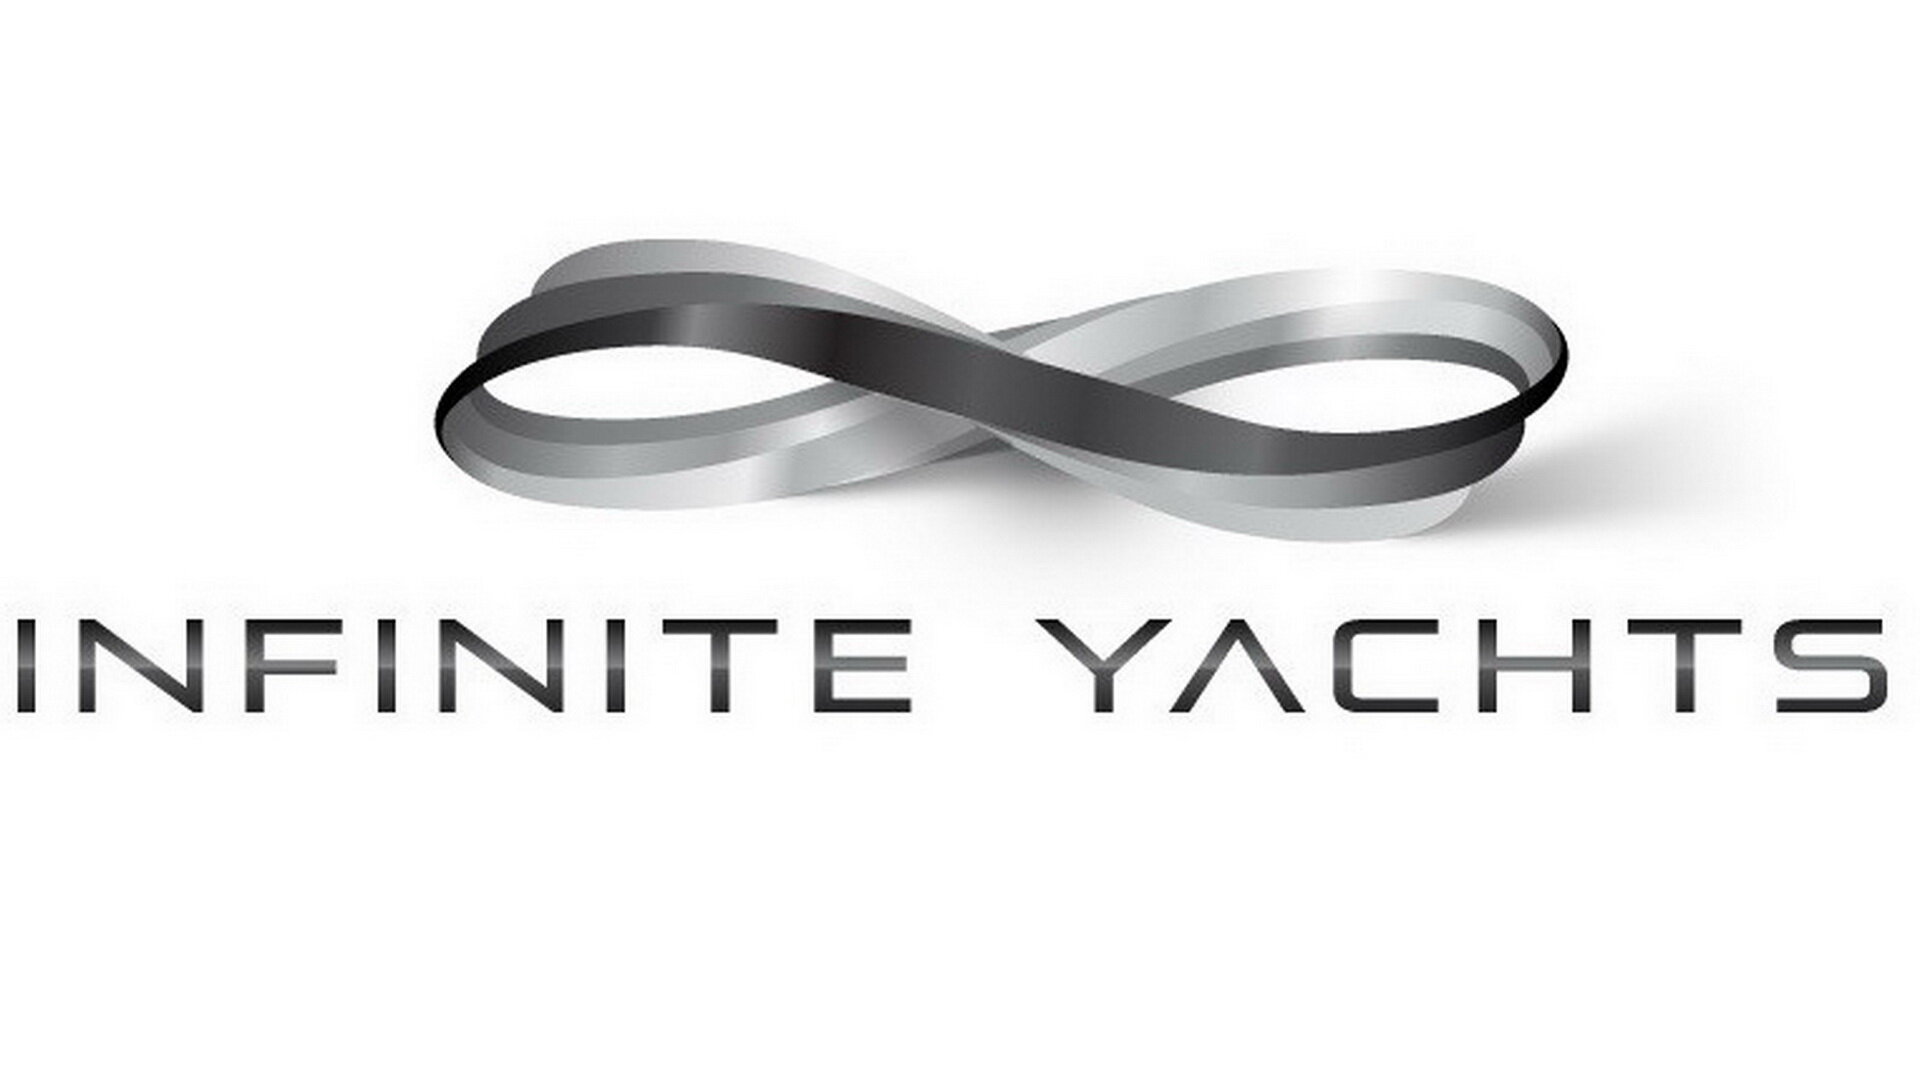 Infinite yachts